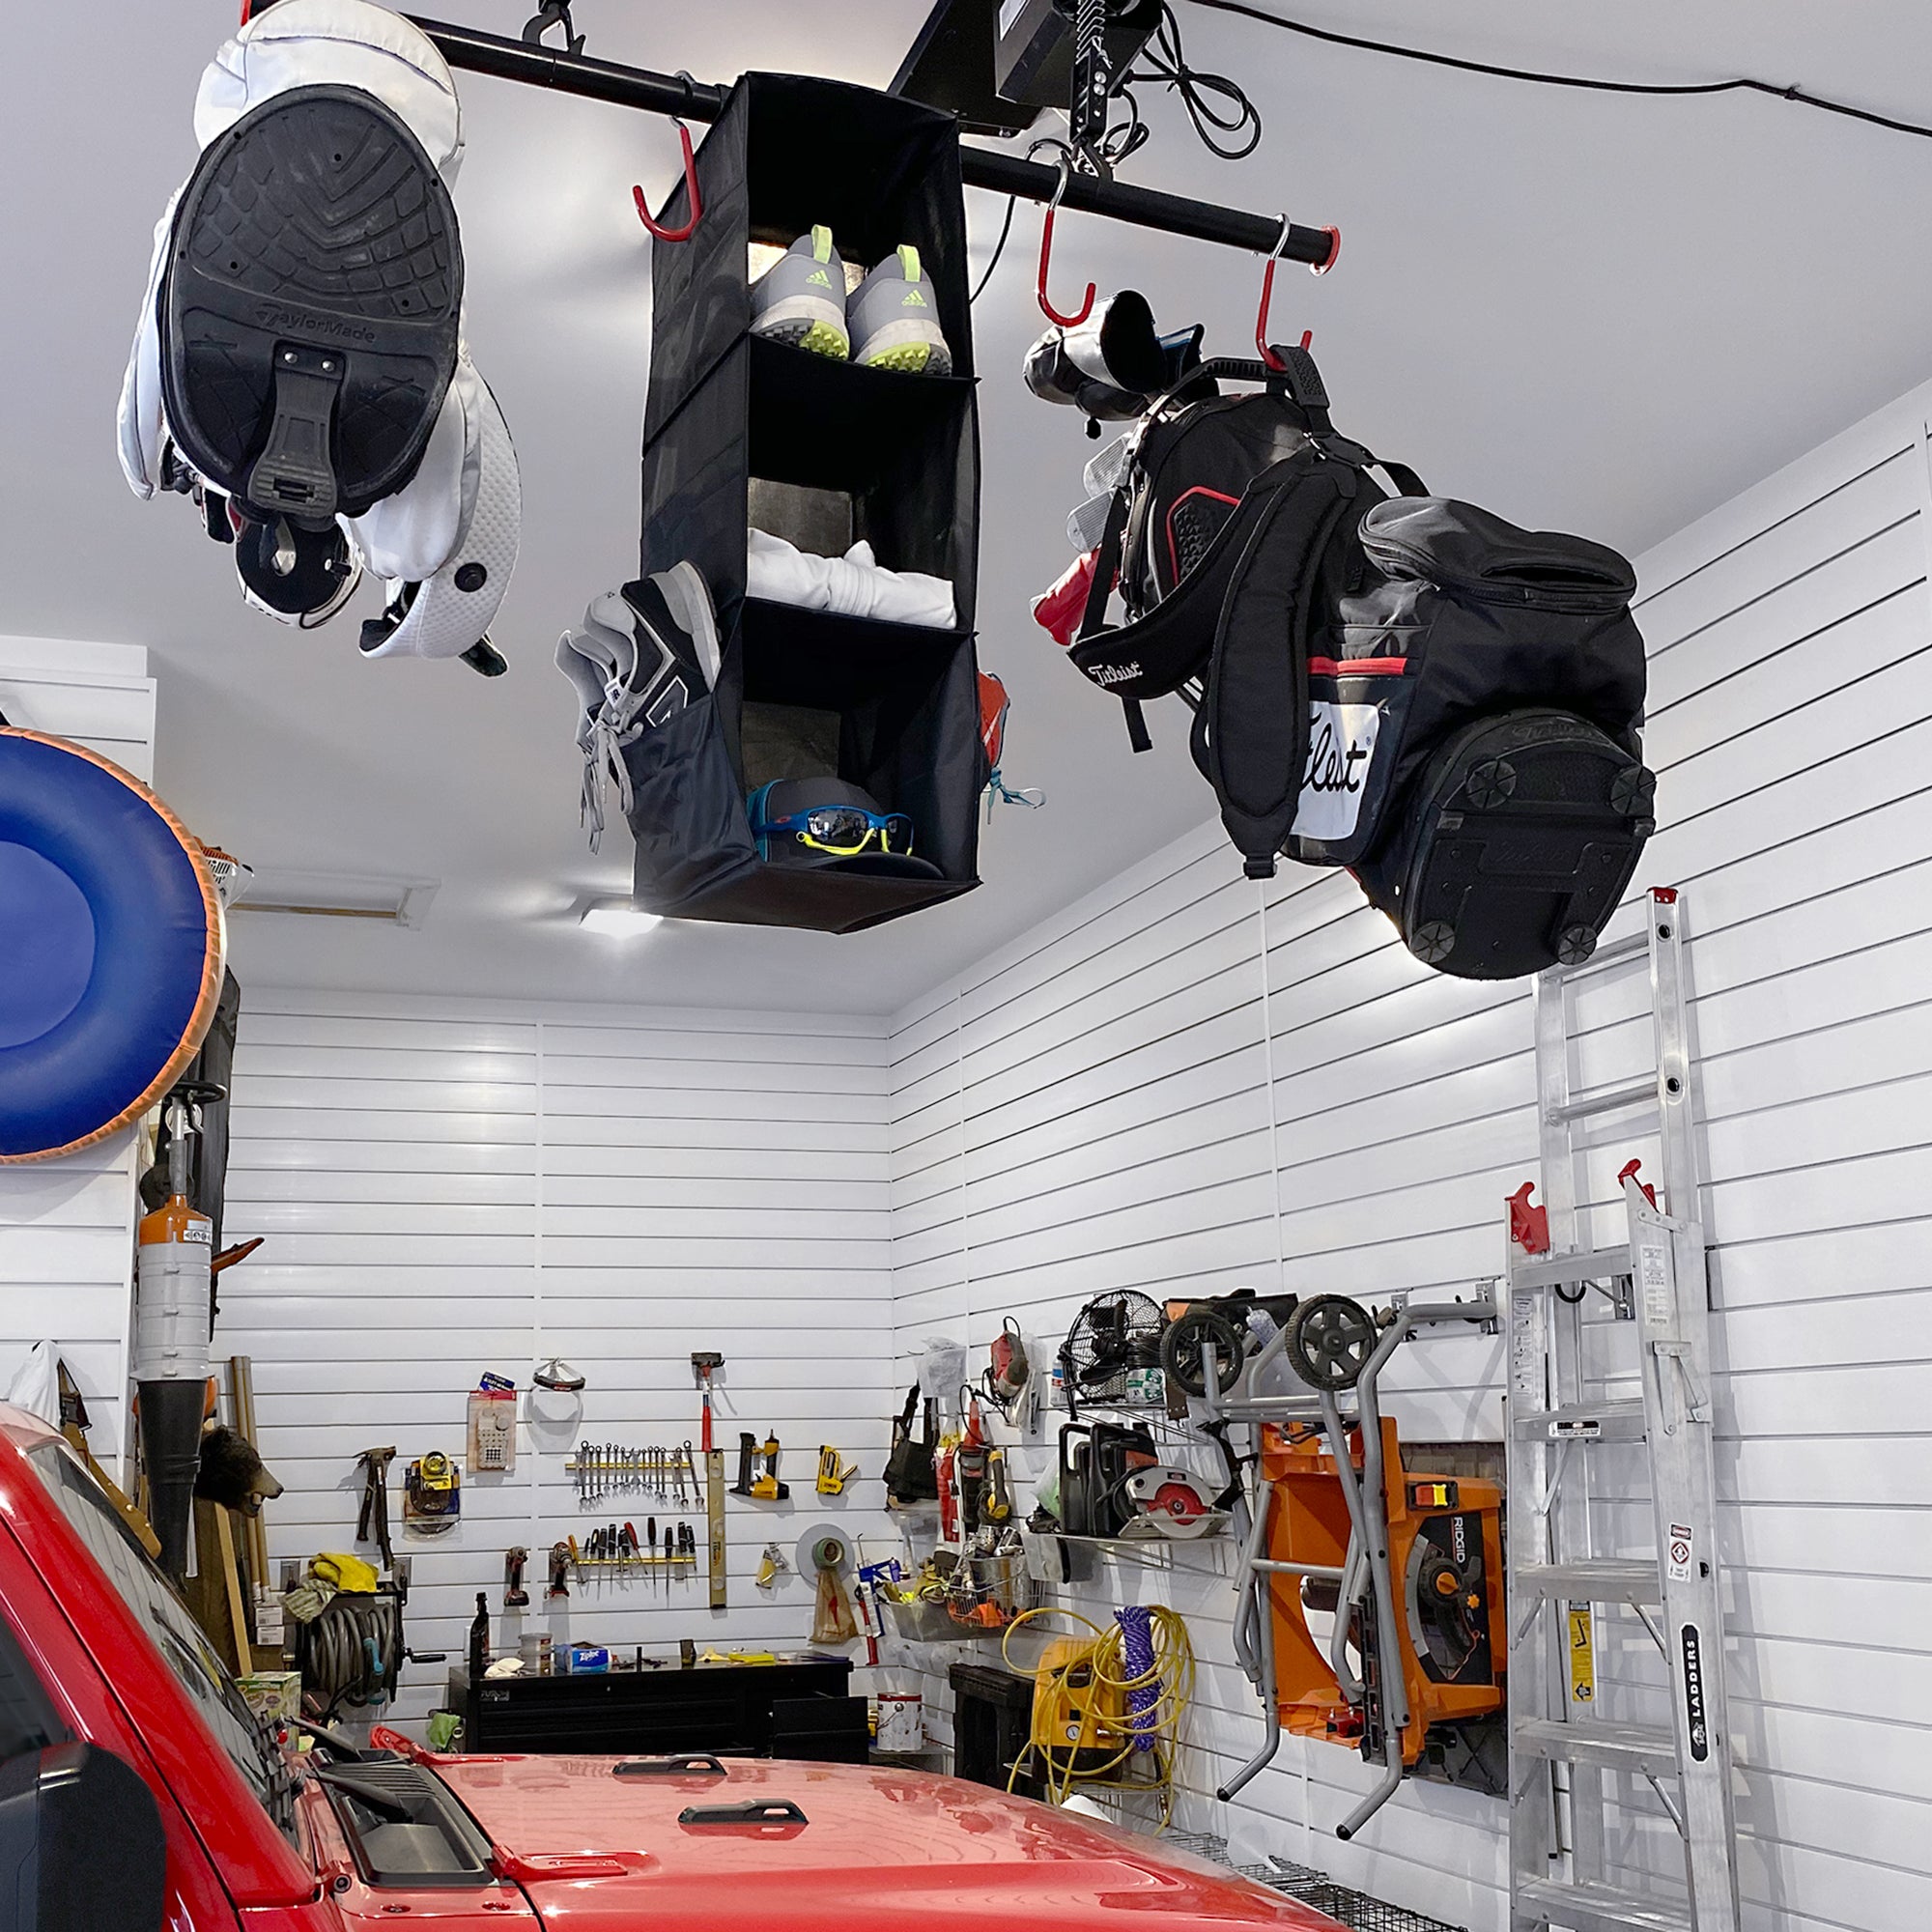 Garage Gator – Élévateur motorisé pour sacs de golf – 220 lb